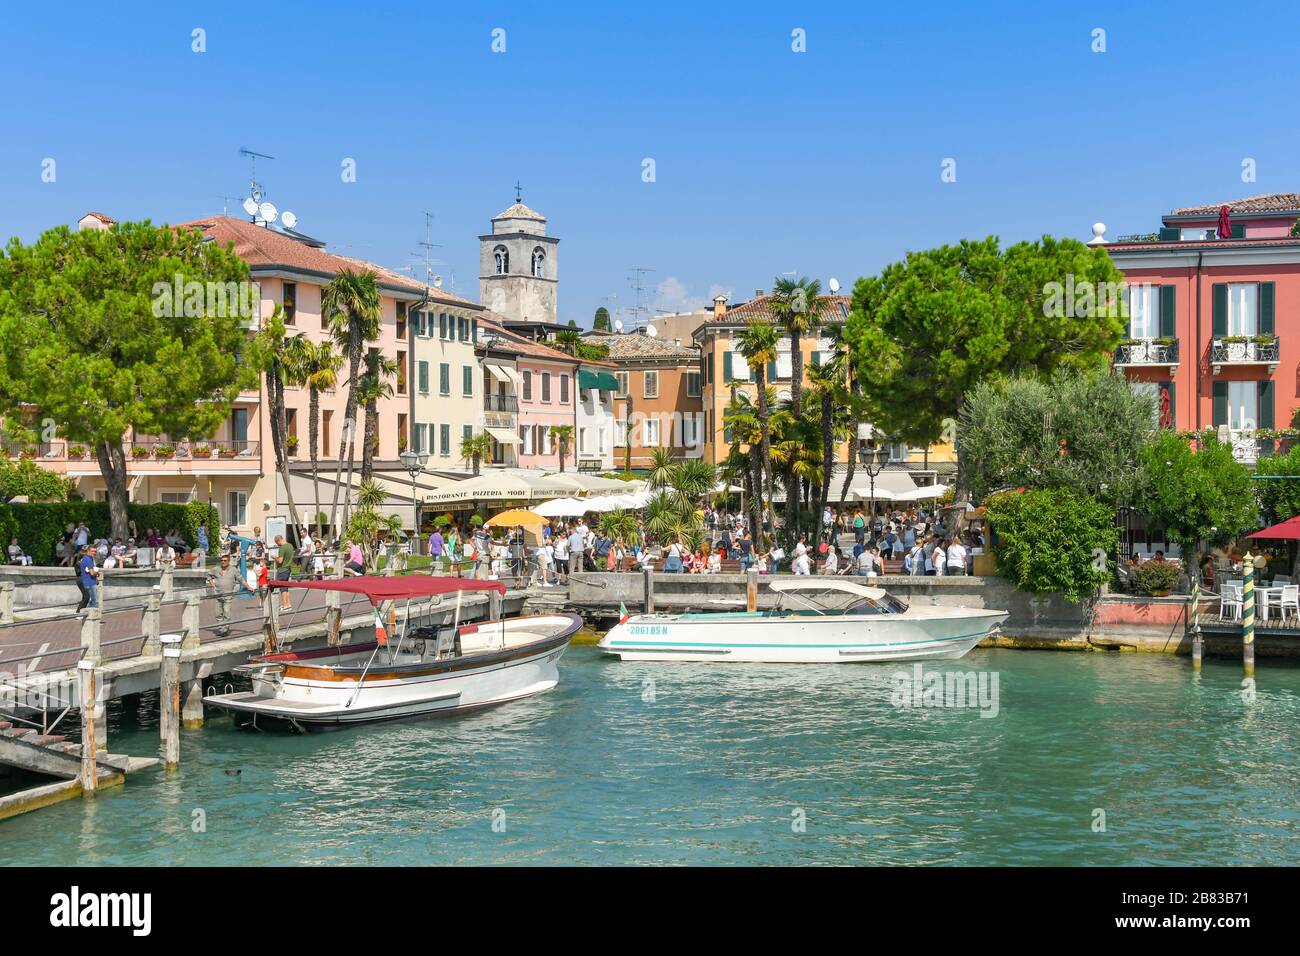 SIRMIONE SUL LAGO DI GARDA, Italia - Settembre 2018: Il lungomare del porto nella località di Sirmione sul Lago di Garda. Foto Stock